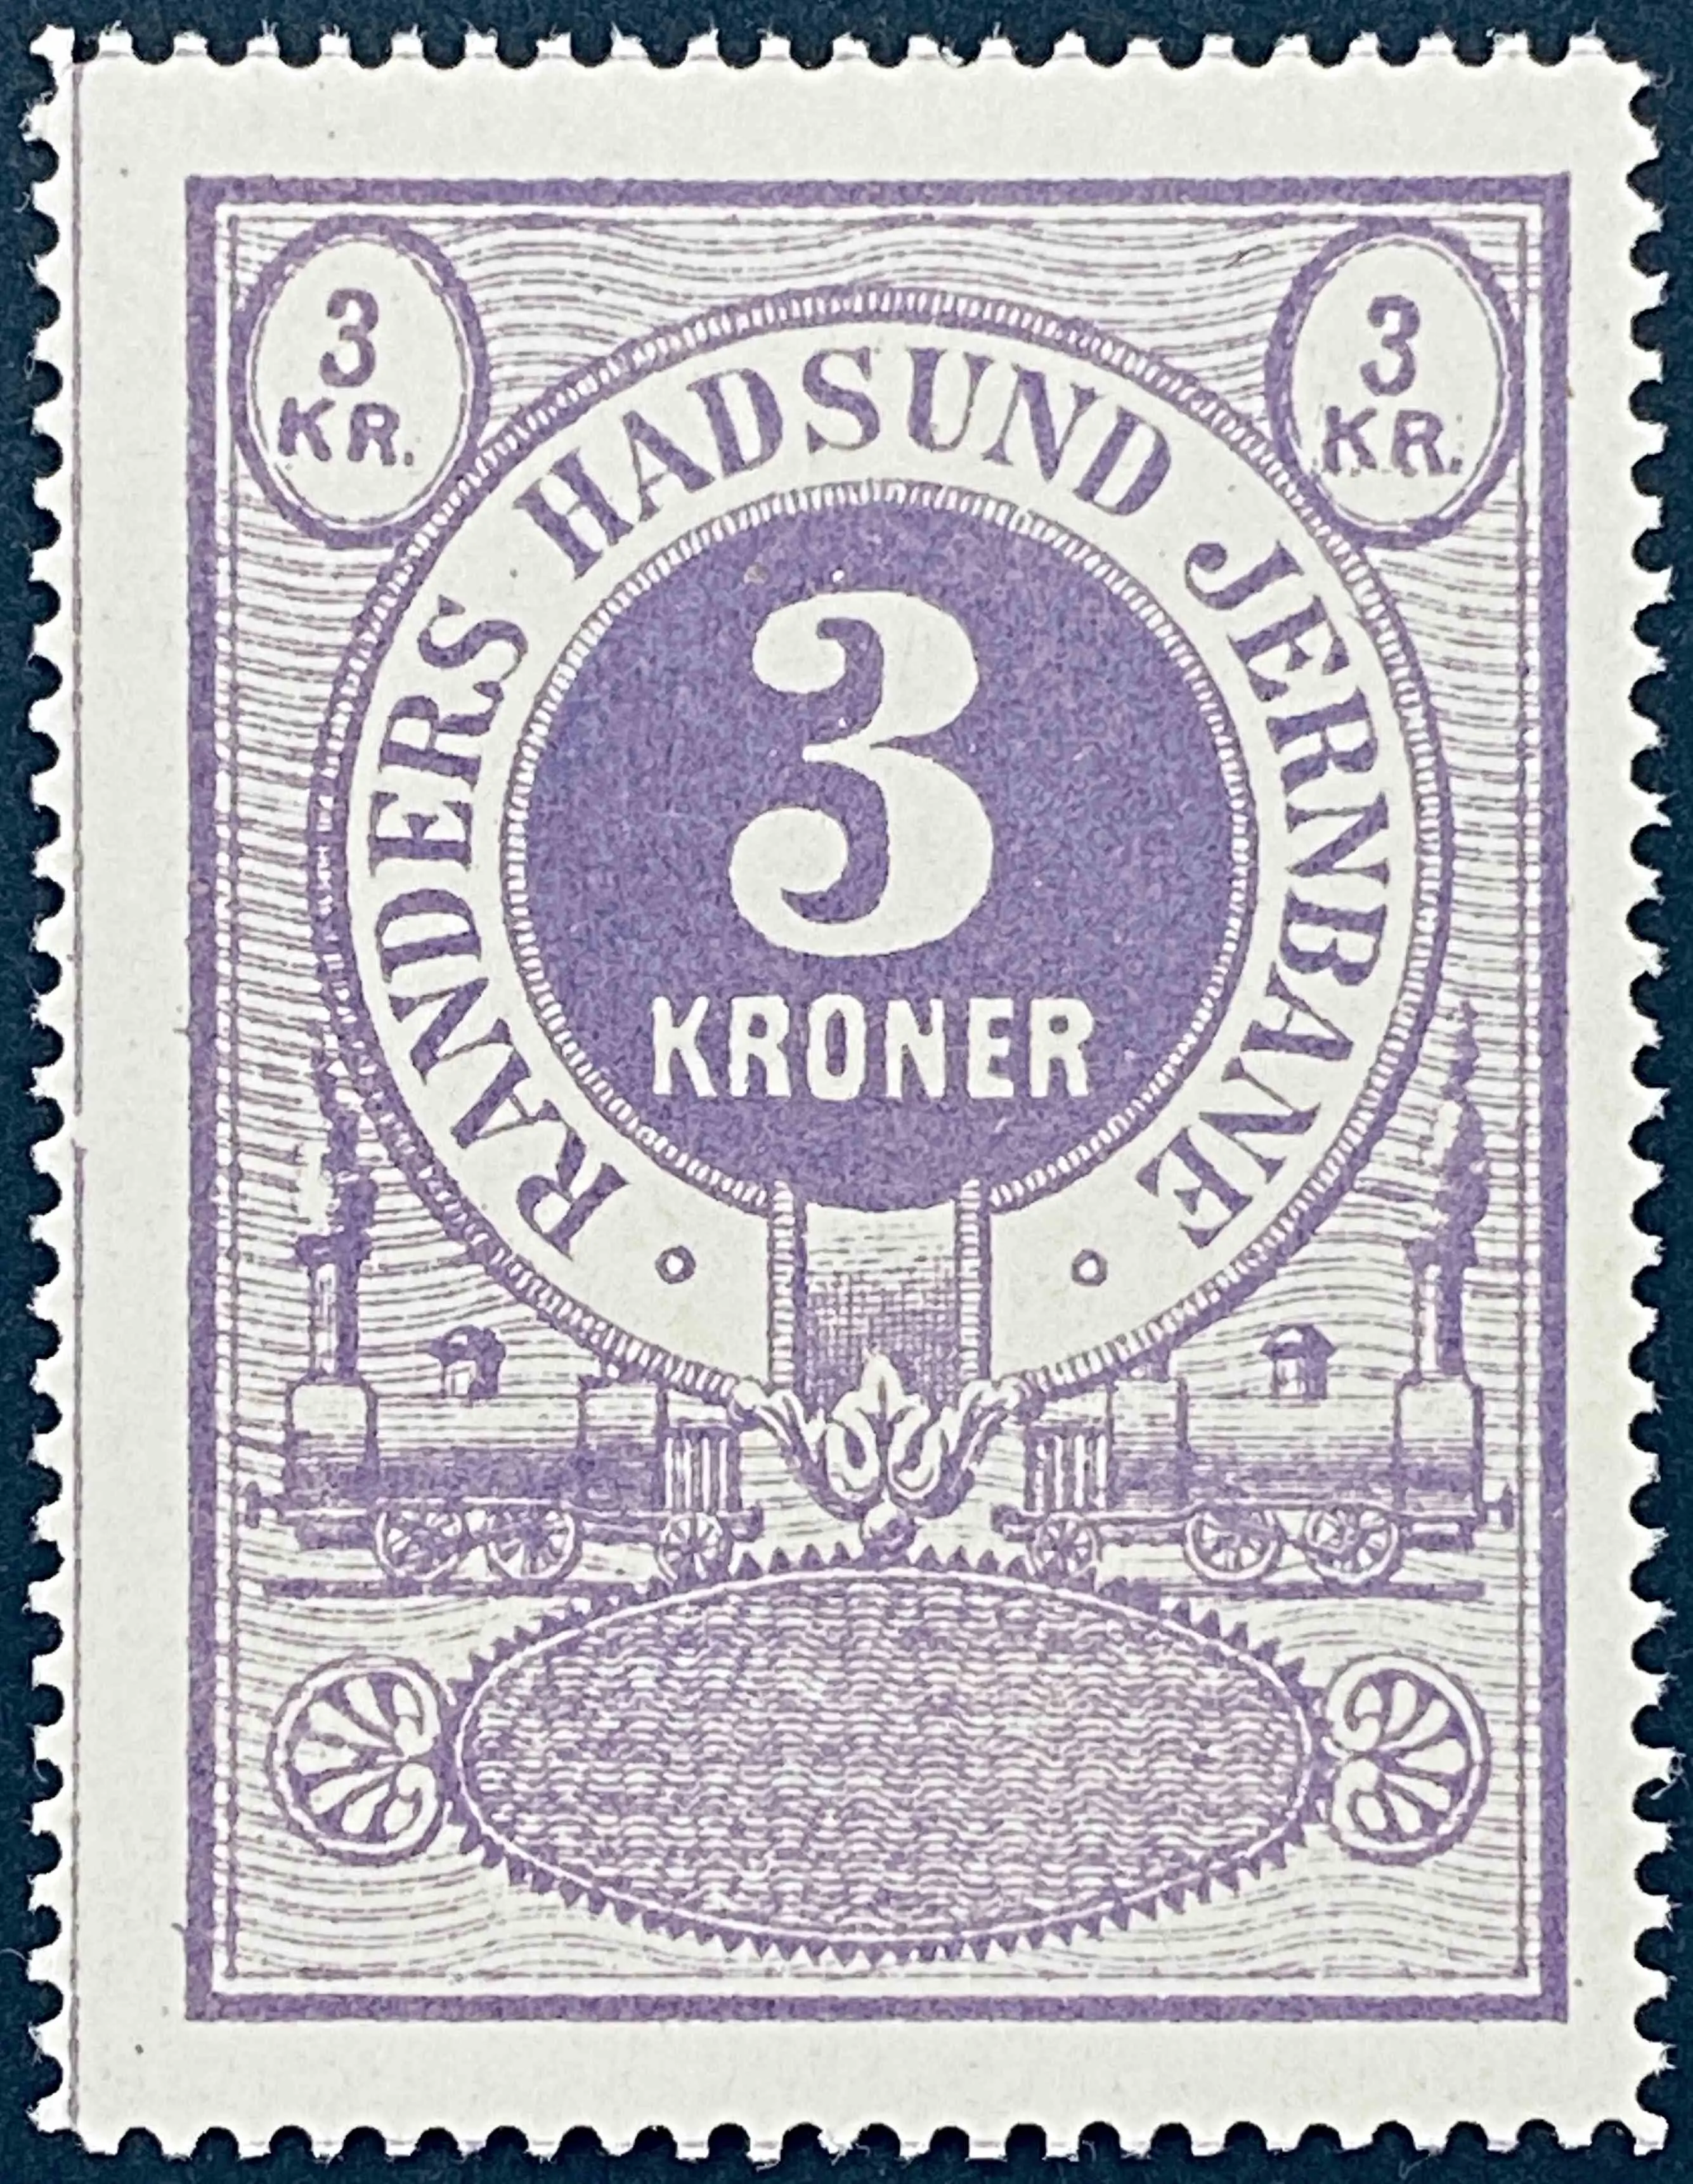 RHJ 31 - 3 KRONER - Violet.